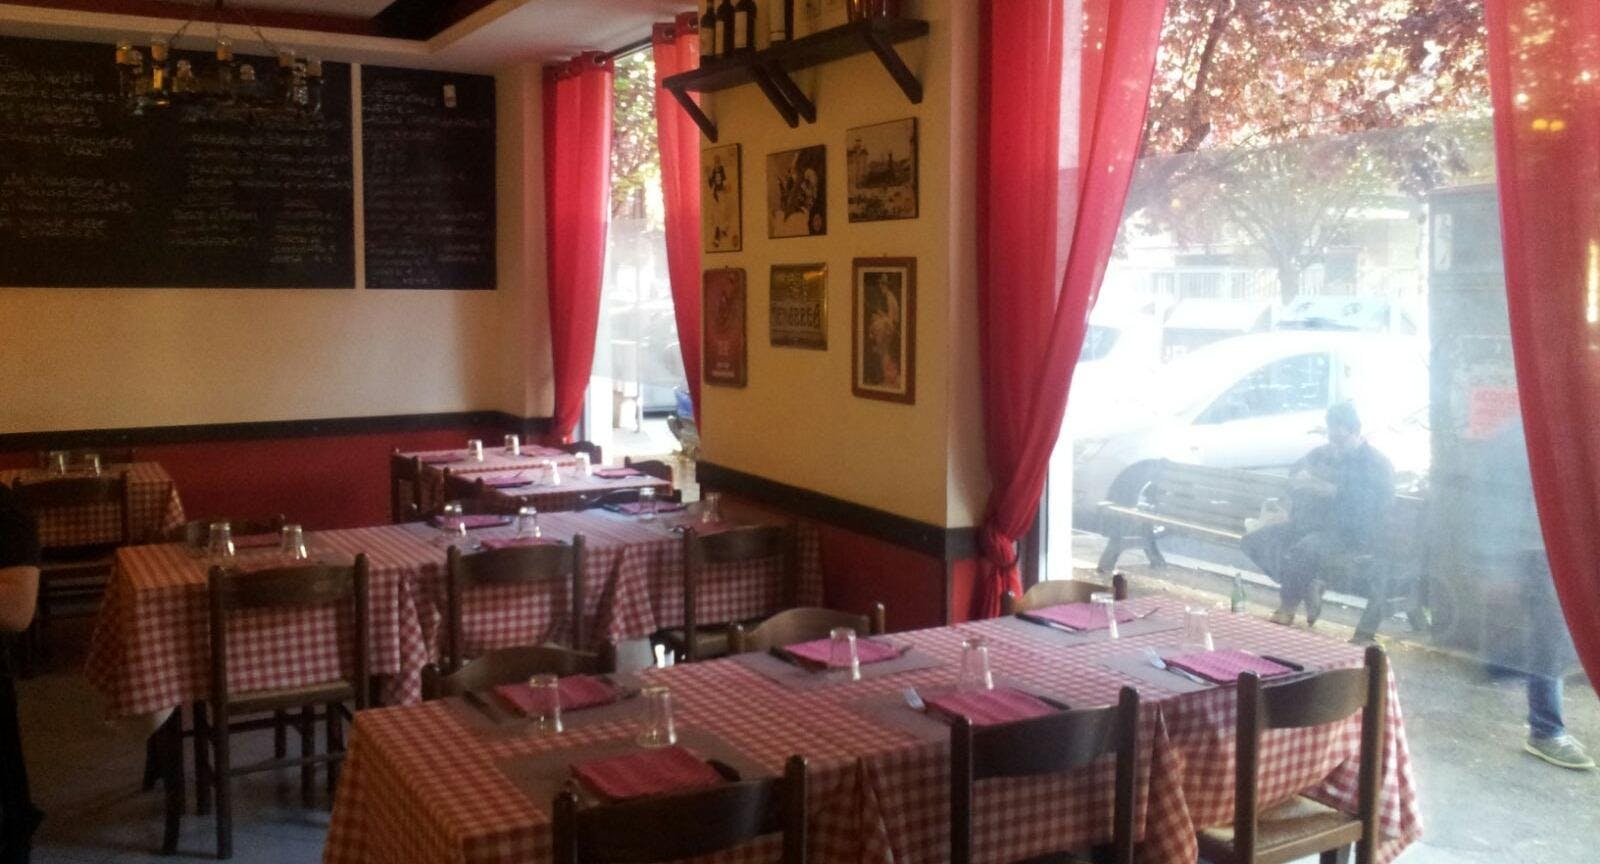 Photo of restaurant Trattoria Strozzaquintino in Portuense, Rome